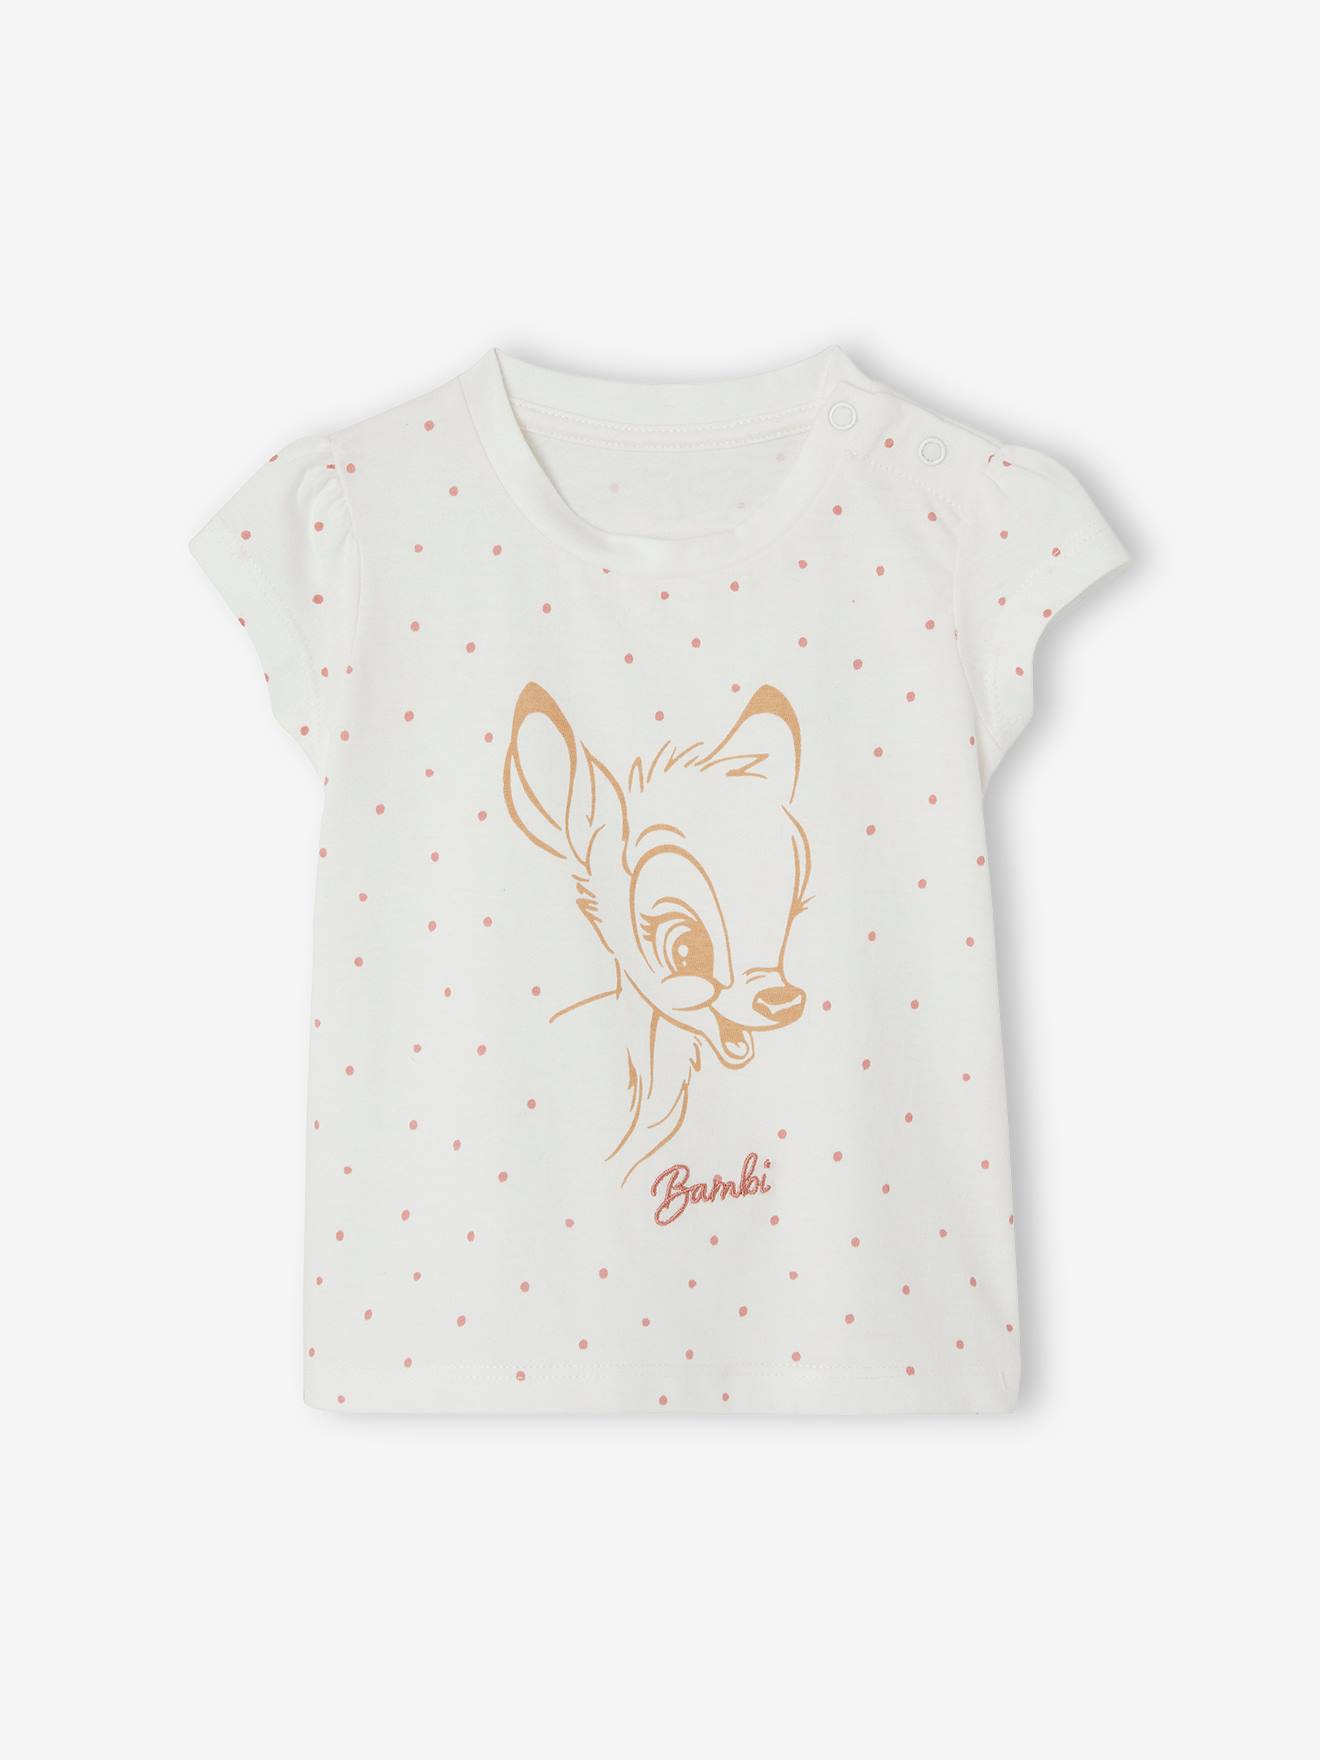 Bambi T-Shirt for Baby Girls, by Disney® - white light all over